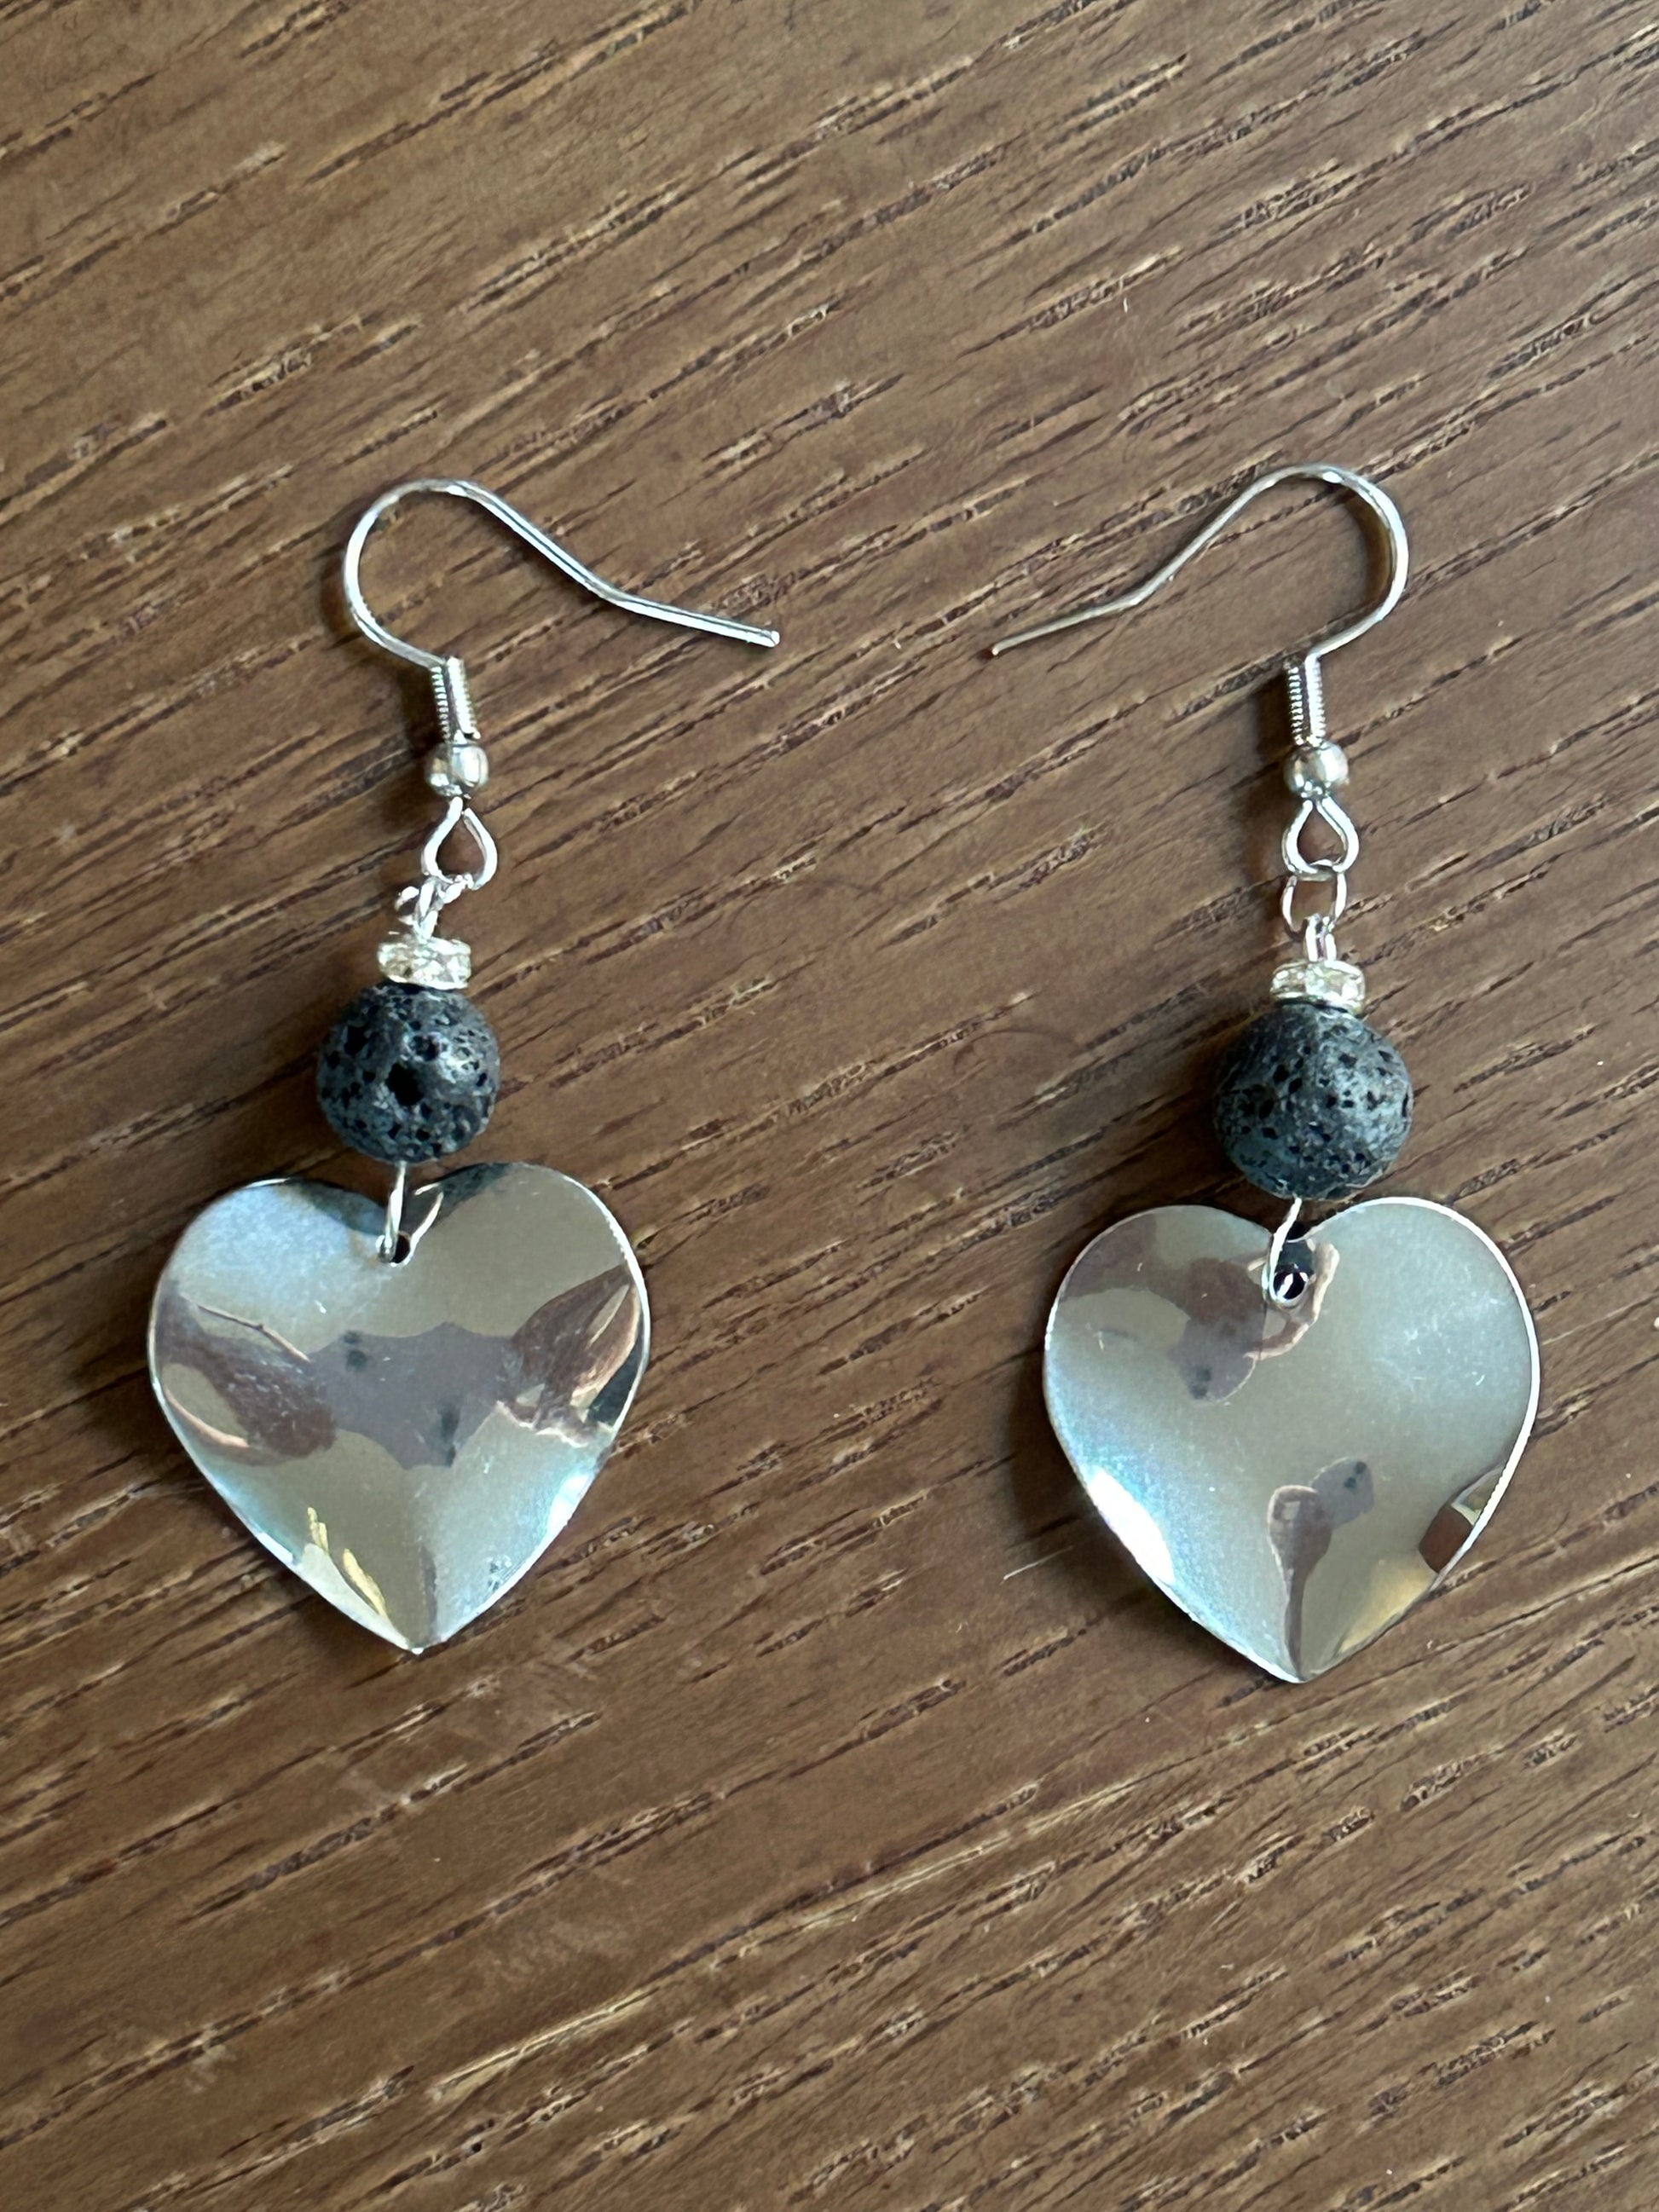 Black Lava Rock Stainless Steel Drop Earrings heart shaped